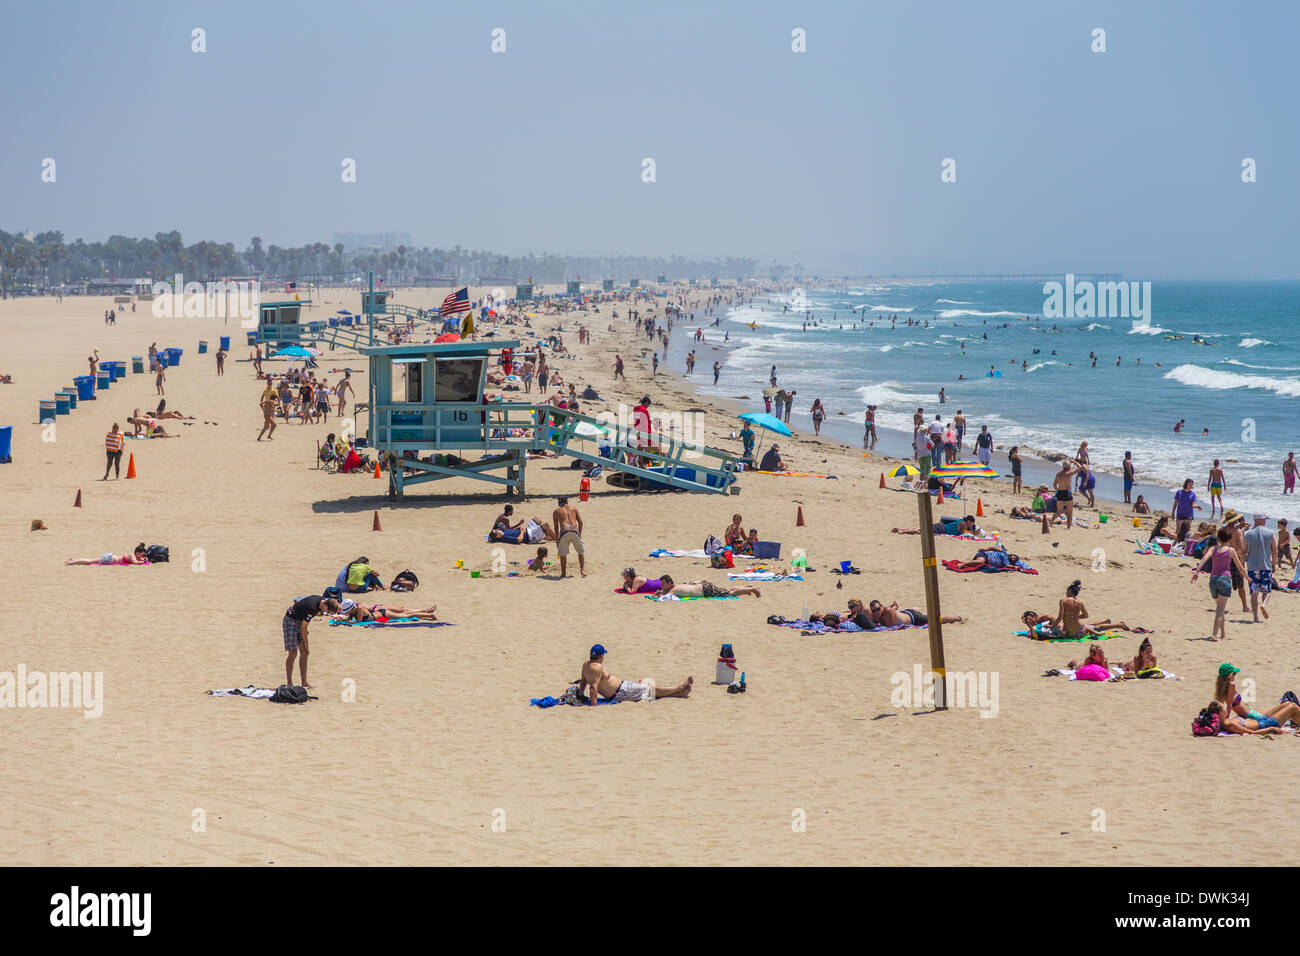 People sunbathing and swimming at Malibu Beach Stock Photo